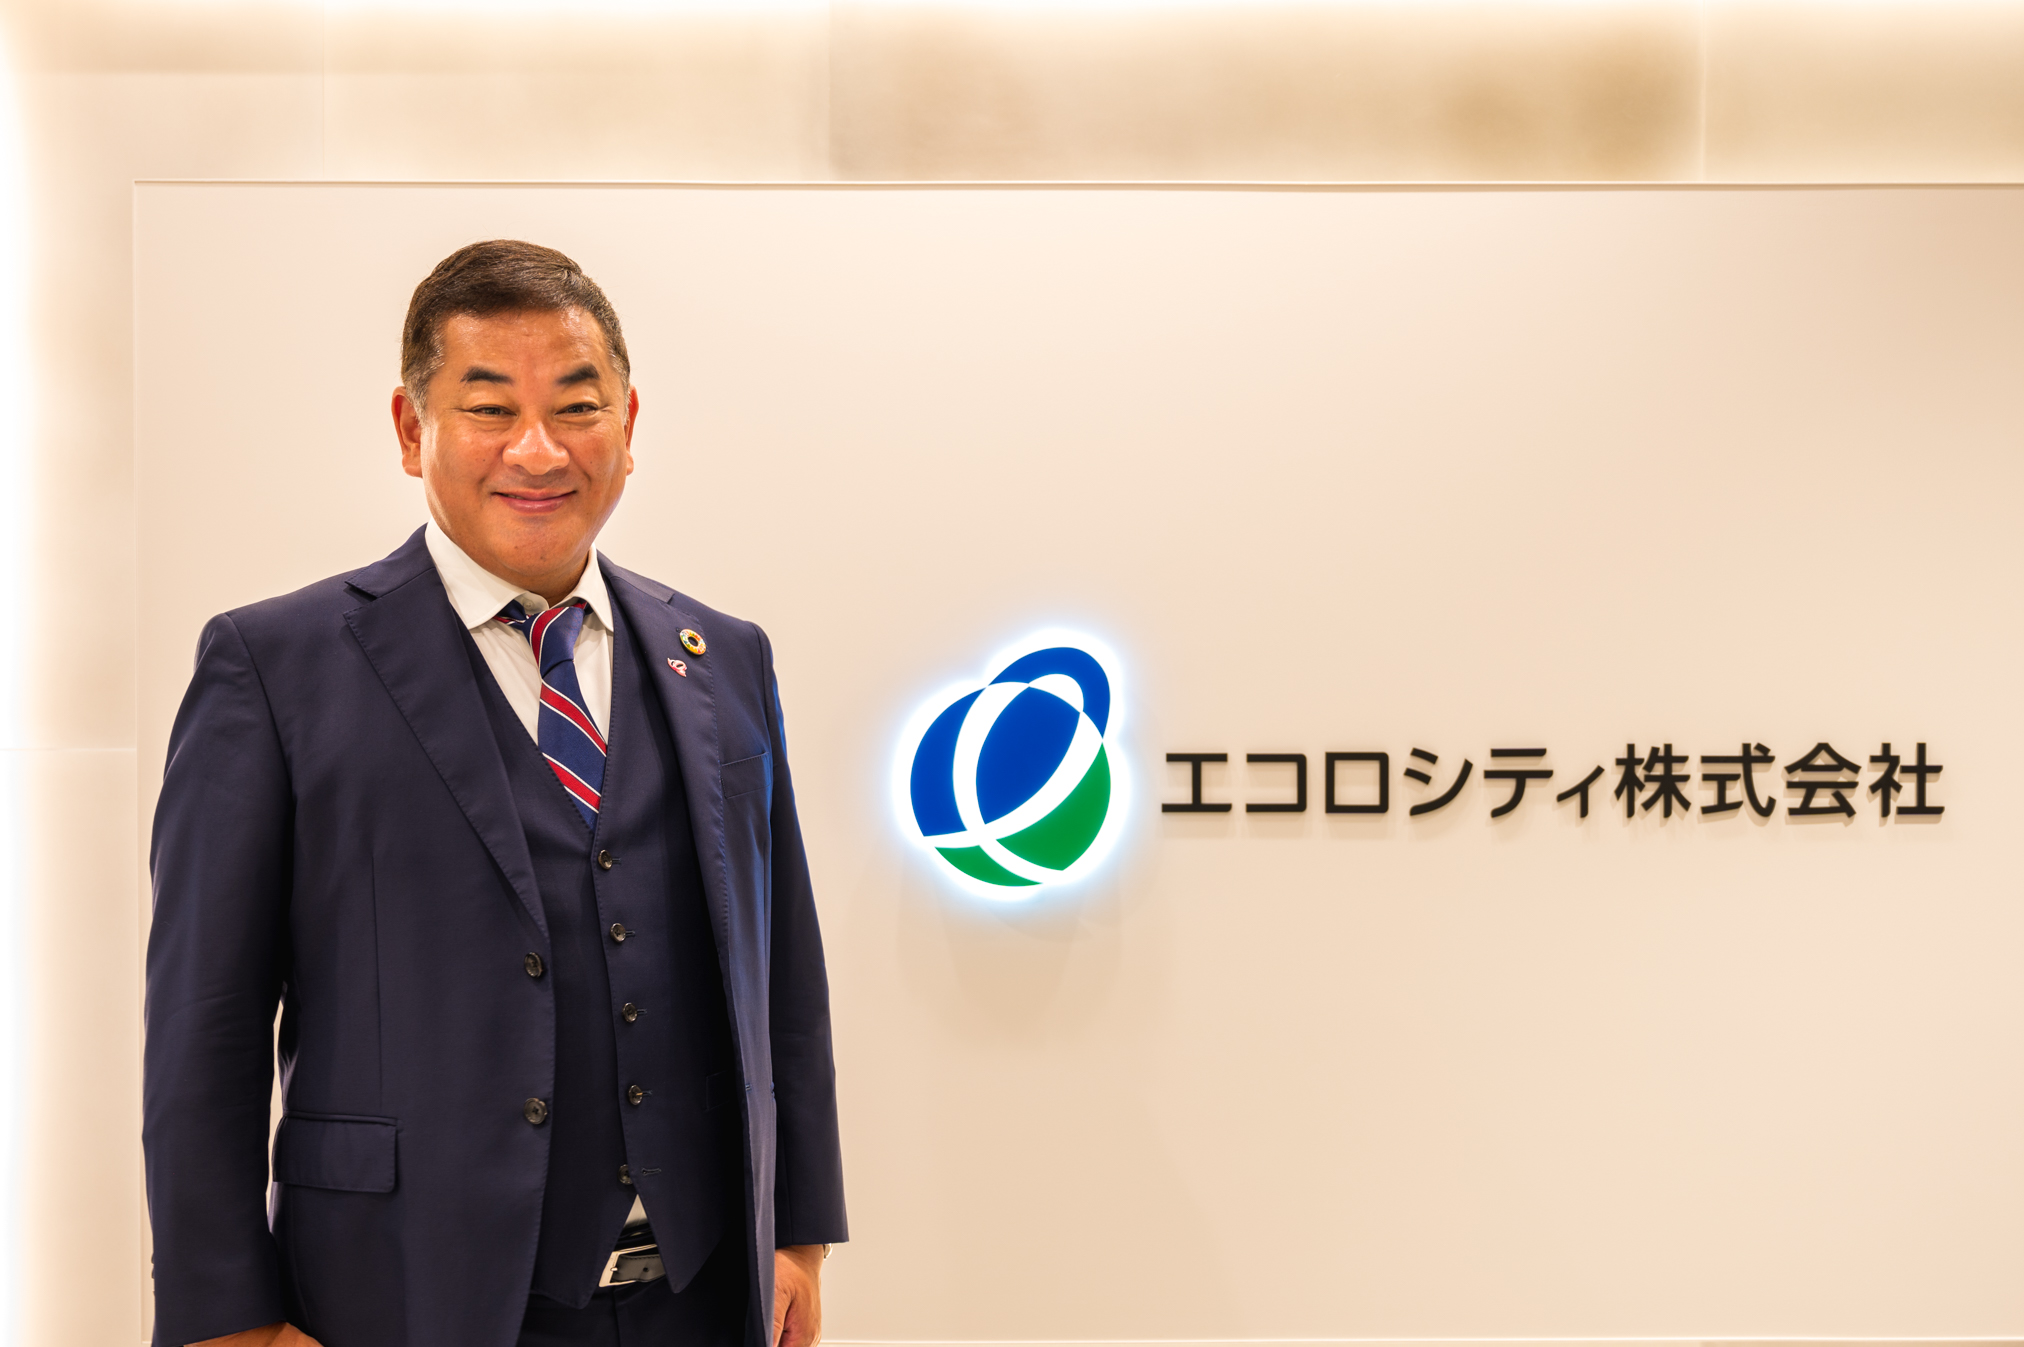 President Inoue